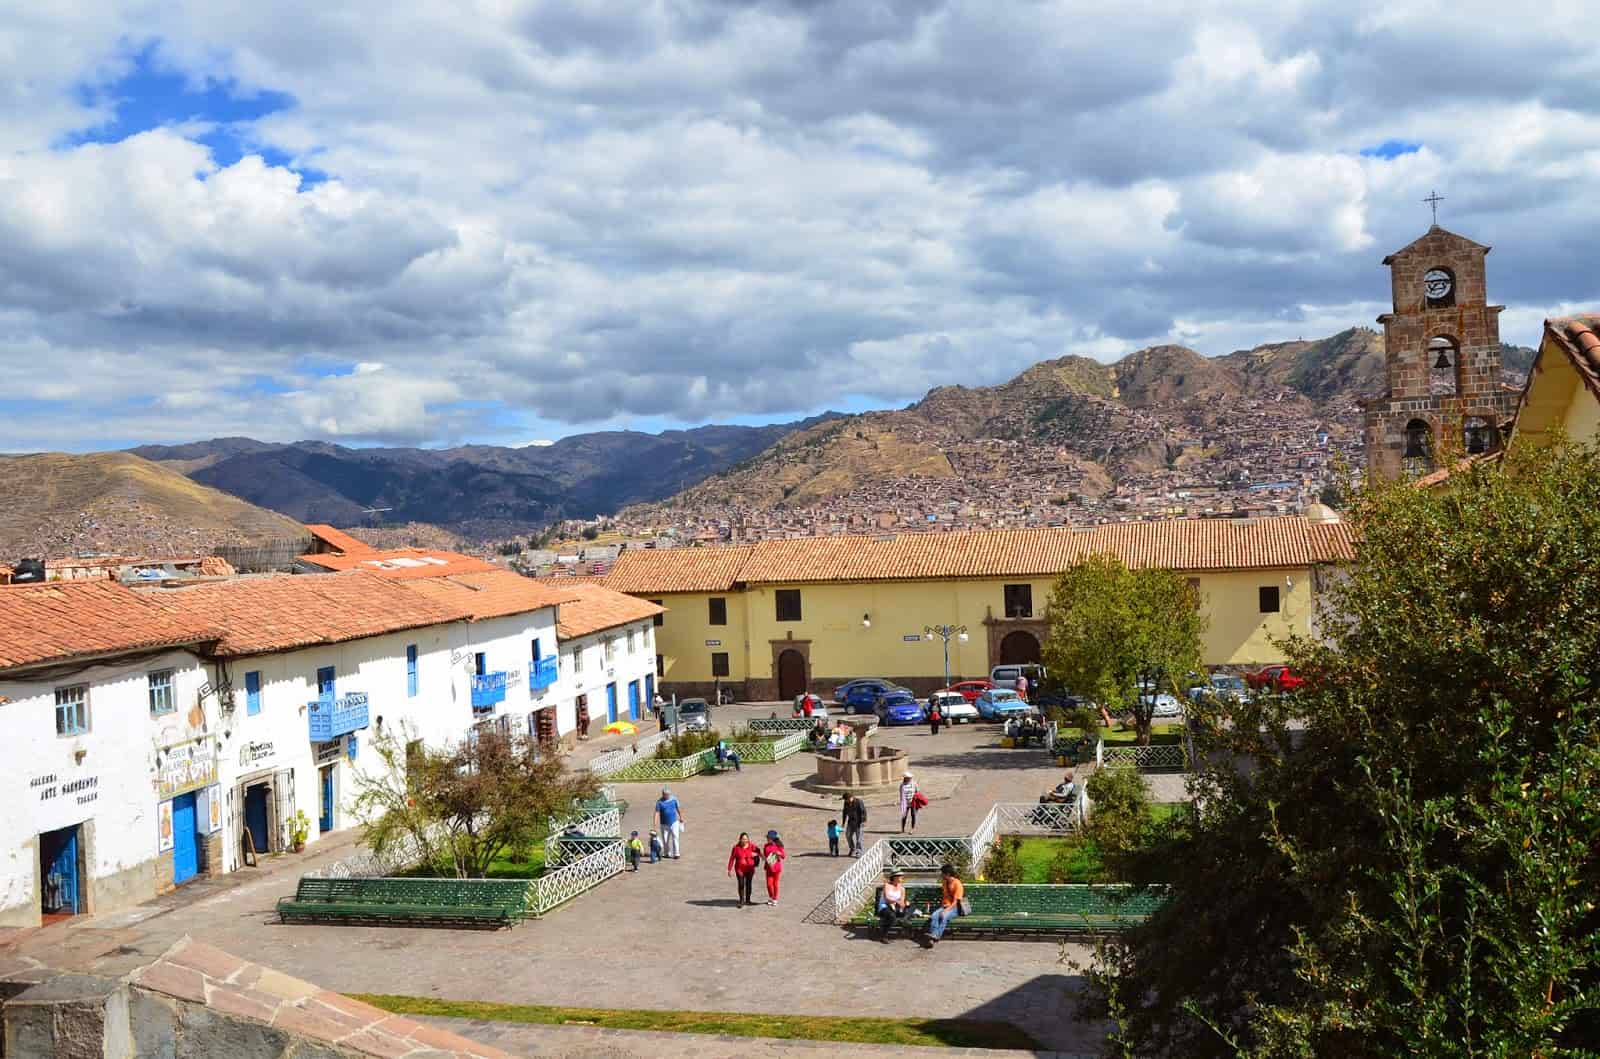 Plaza de San Blas in San Blas, Cusco, Peru